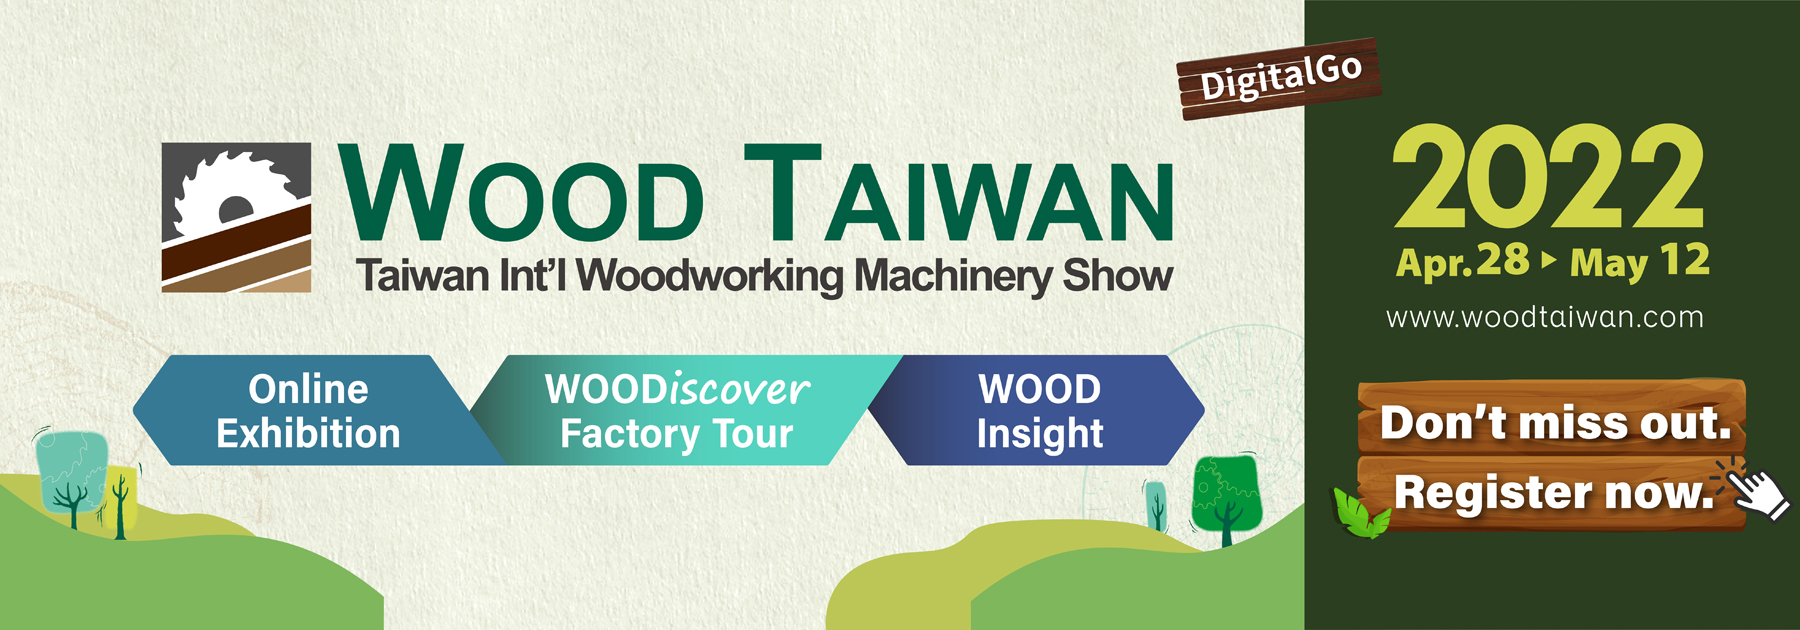 Wood Taiwan